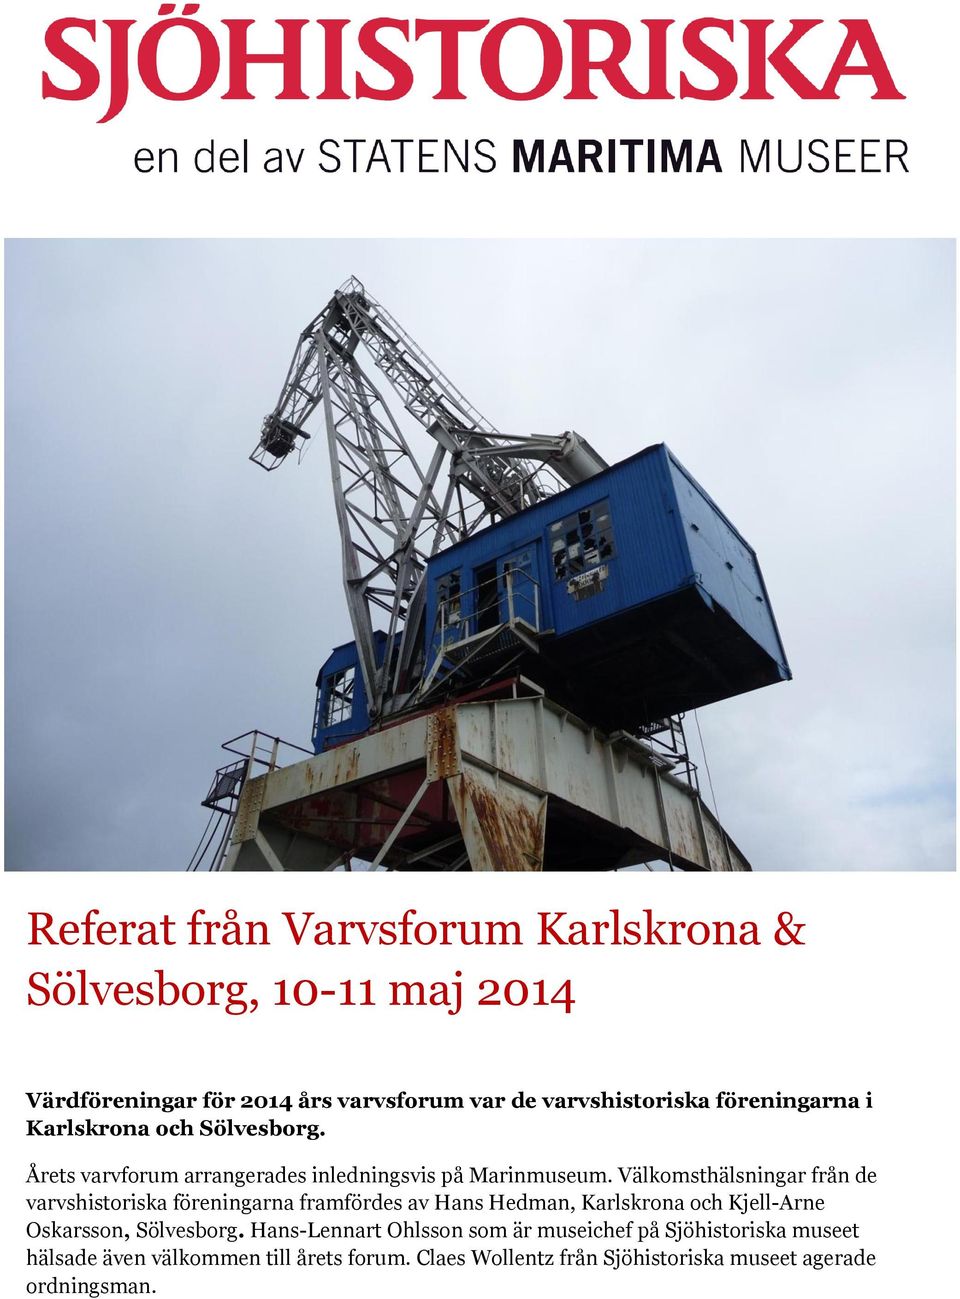 Välkomsthälsningar från de varvshistoriska föreningarna framfördes av Hans Hedman, Karlskrona och Kjell-Arne Oskarsson, Sölvesborg.